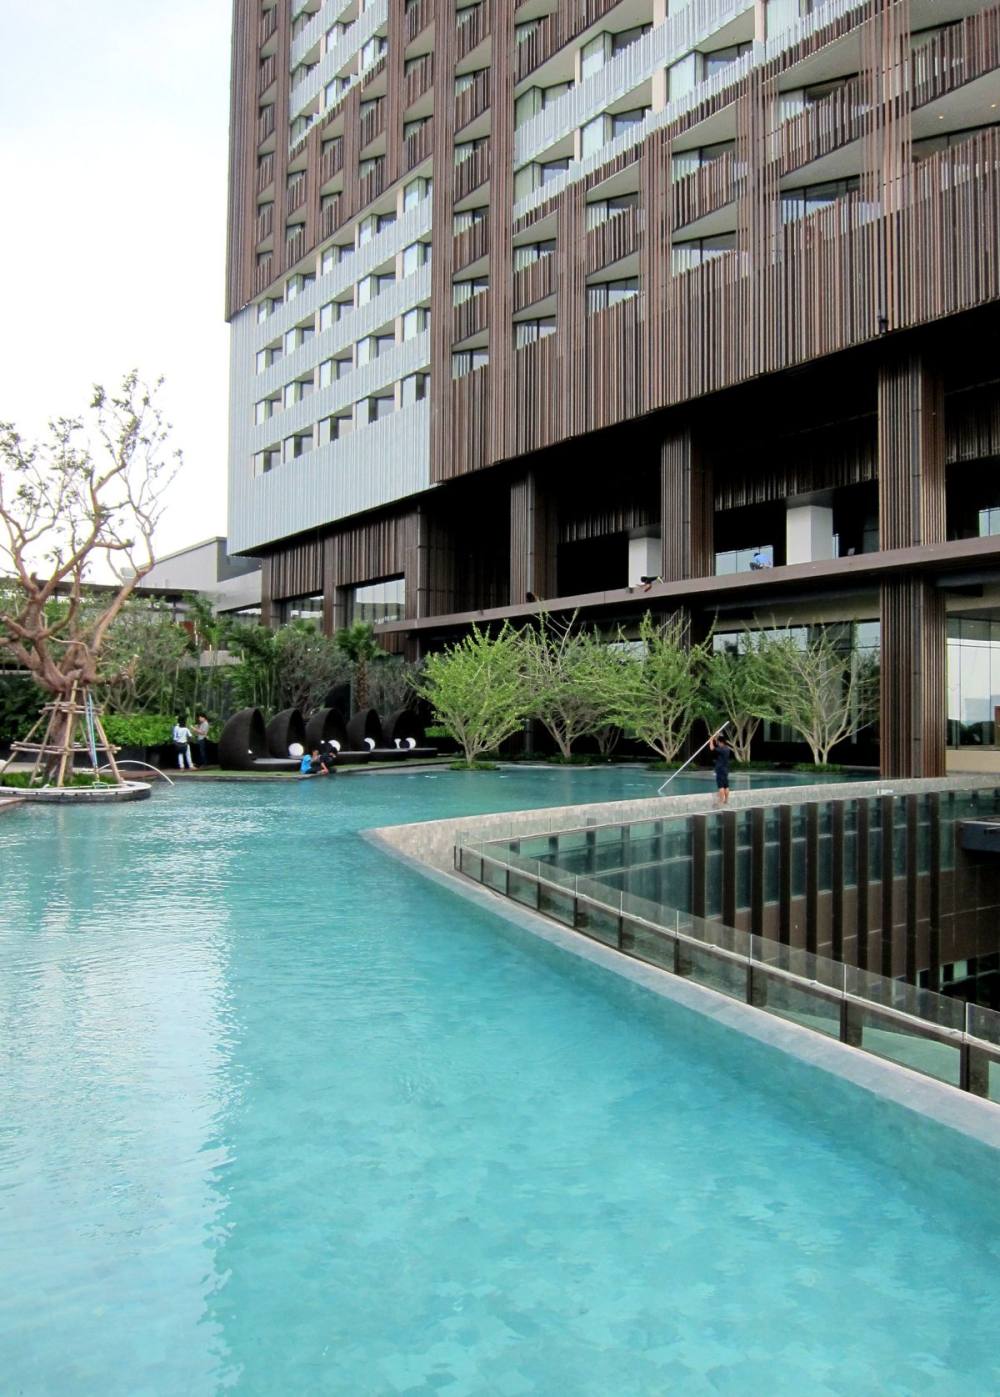 泰国芭堤雅希尔顿酒店景观设计_tr_190111_11.jpg